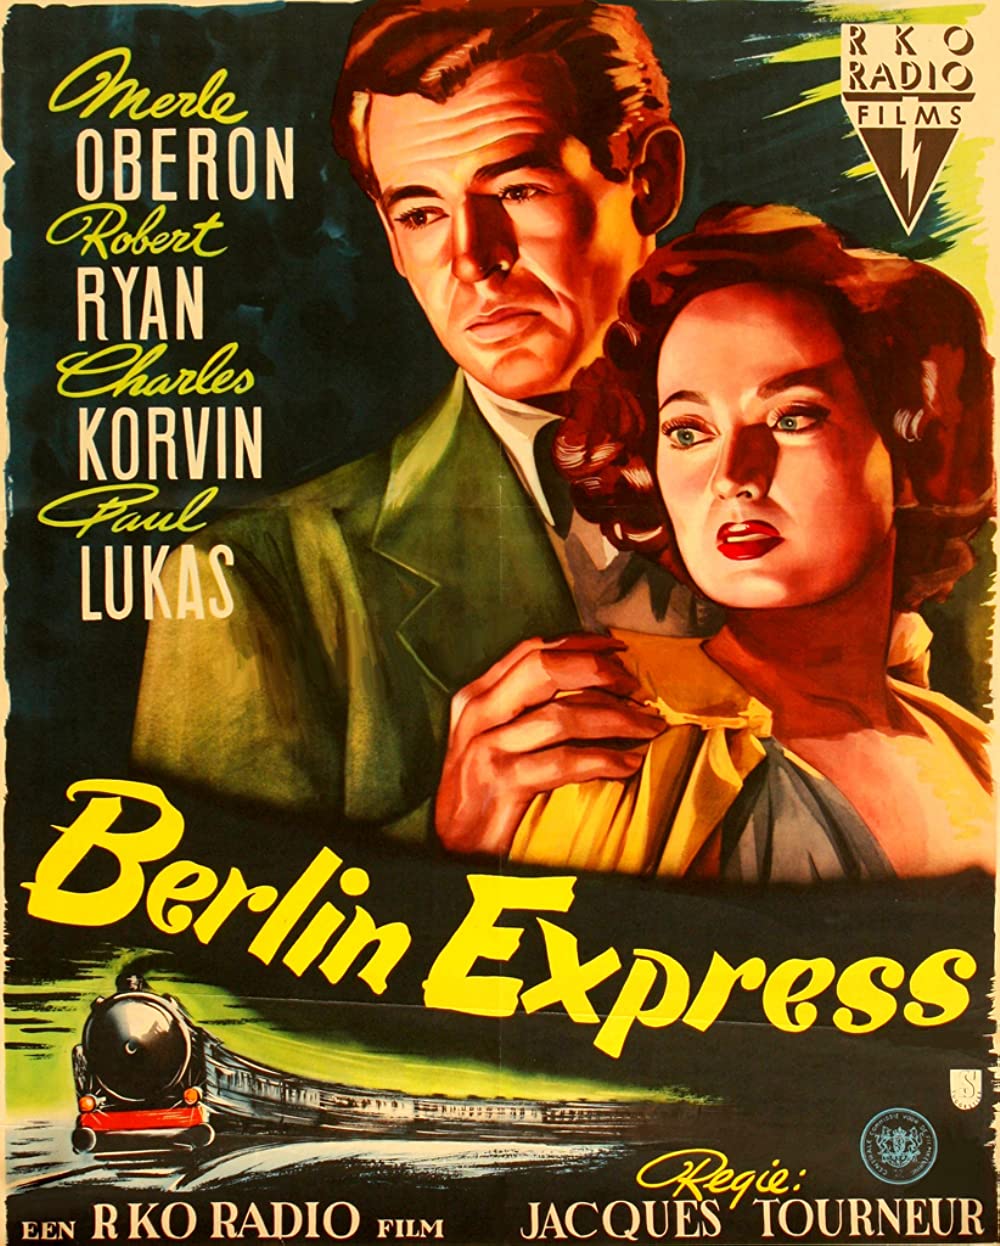 Filmbeschreibung zu Berliner Express